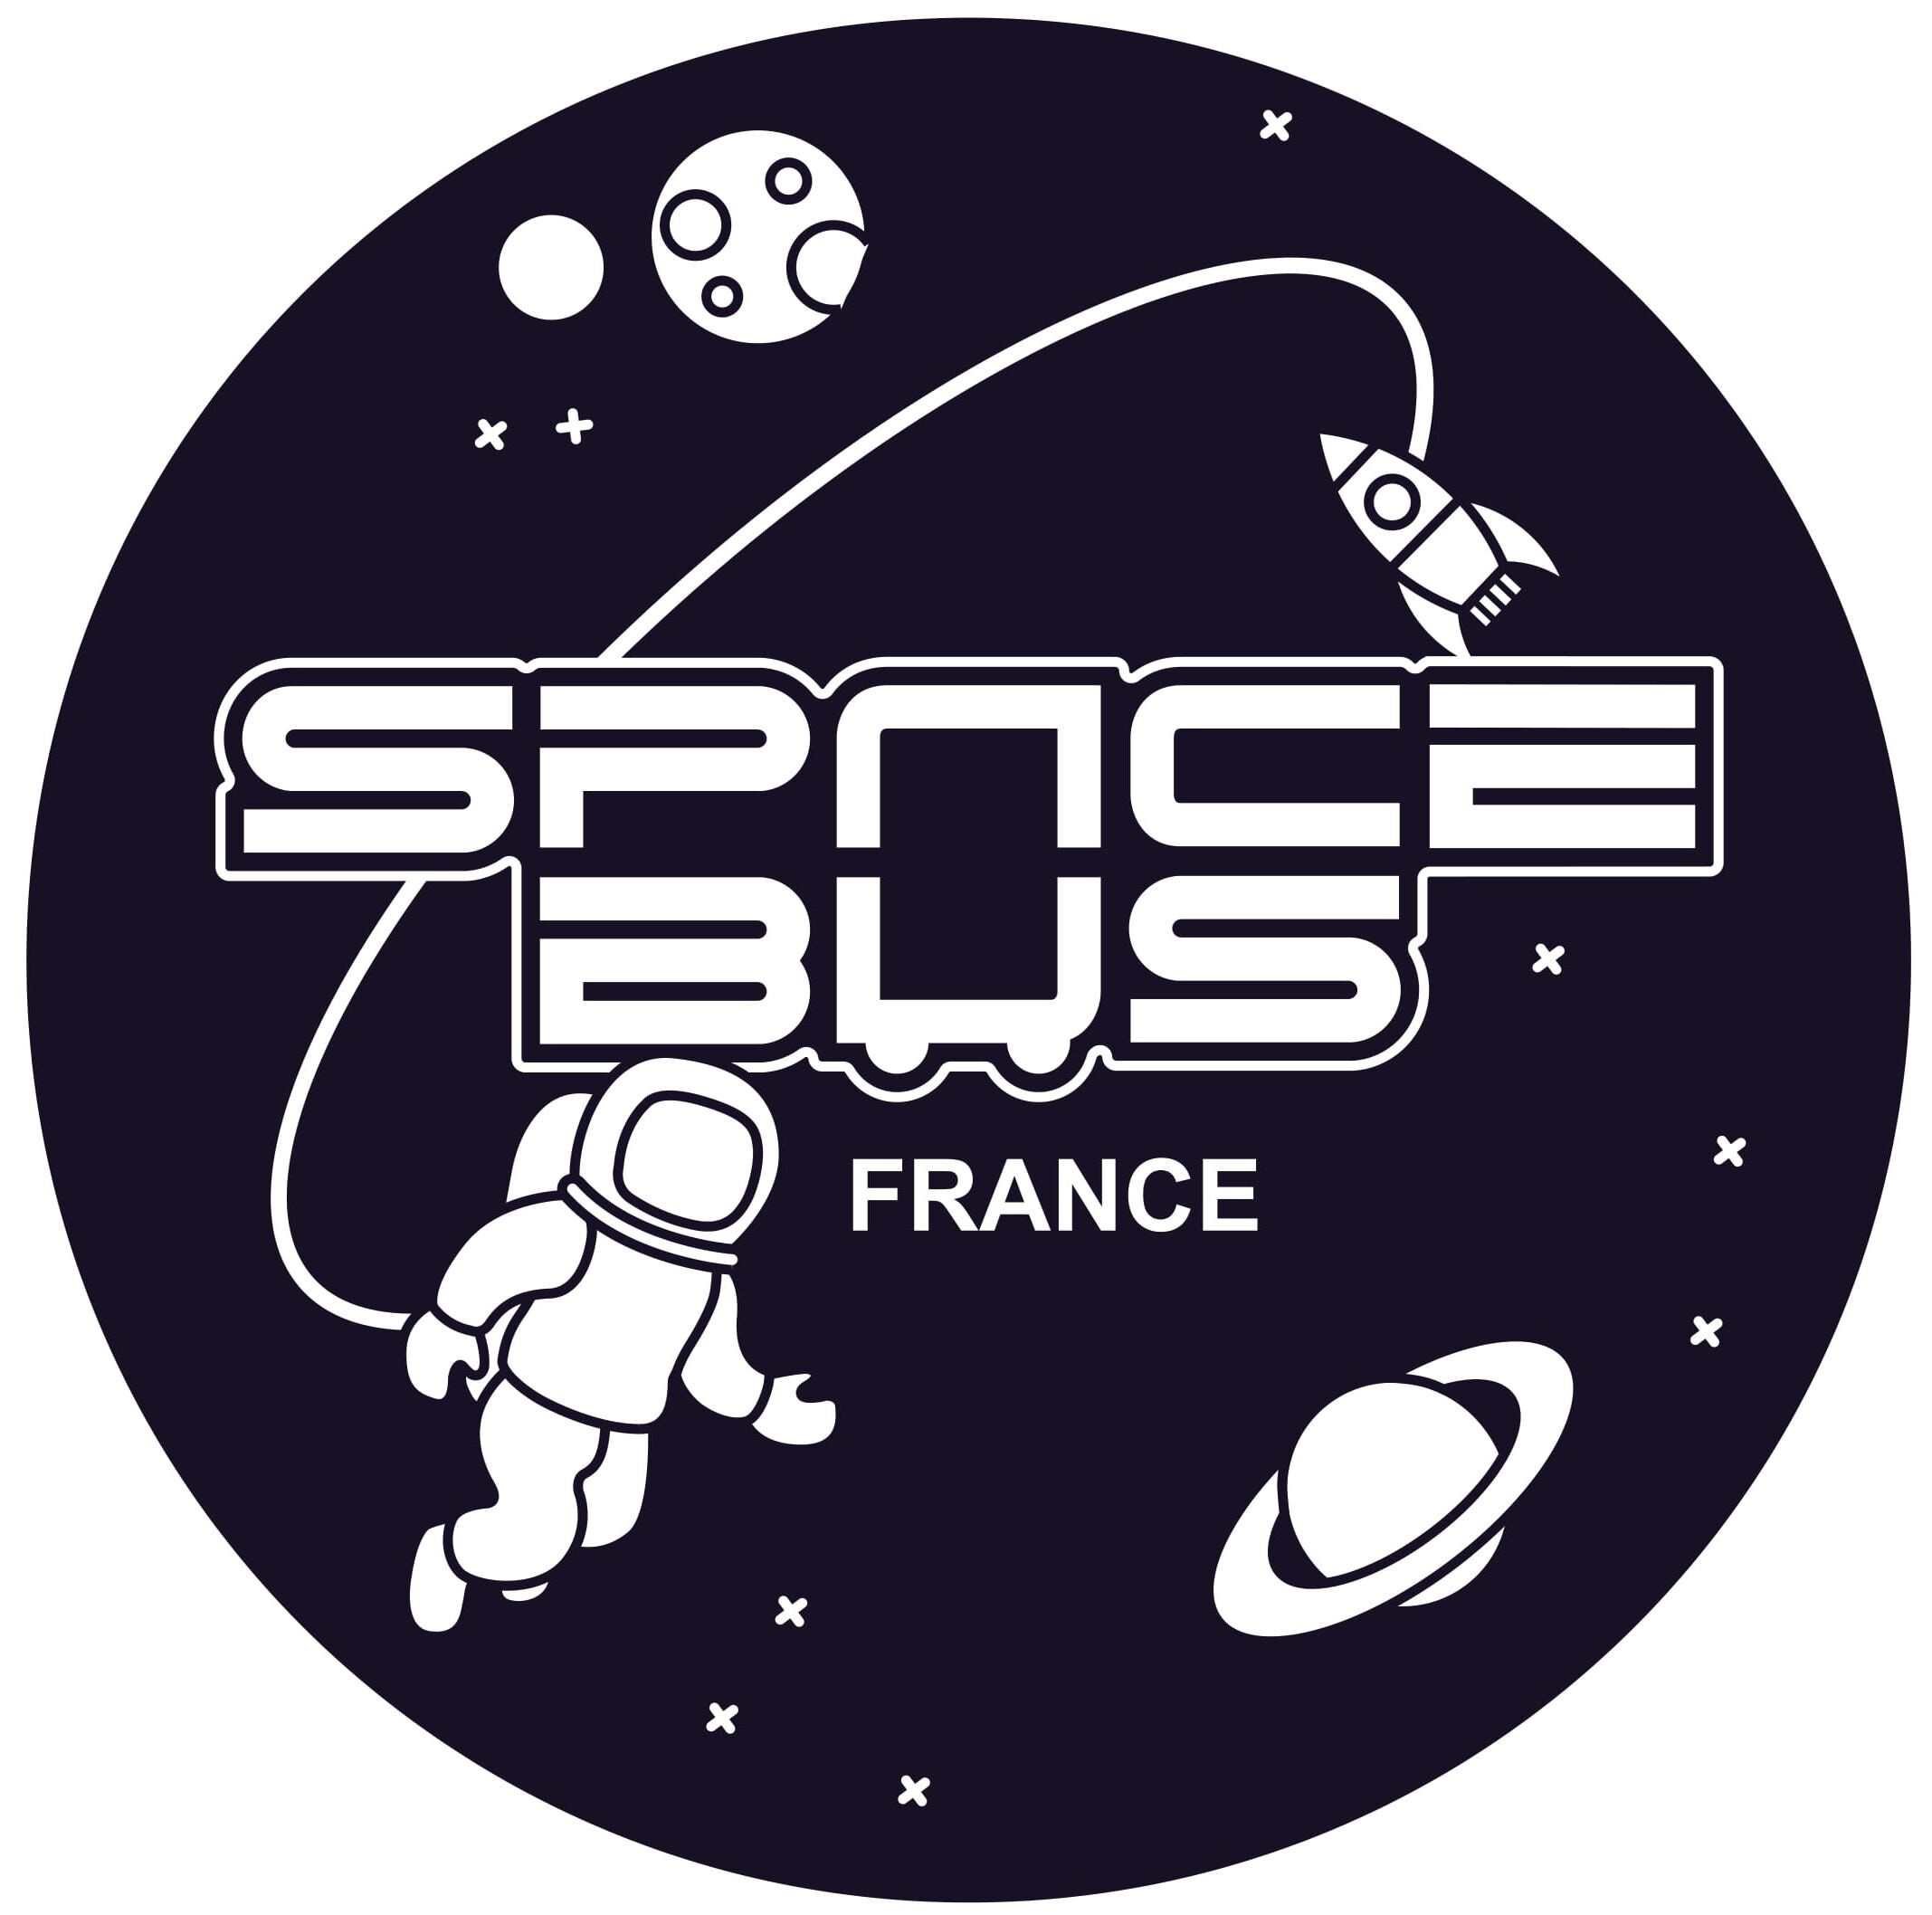 Spacebus France visite Les Observatoires du Clain